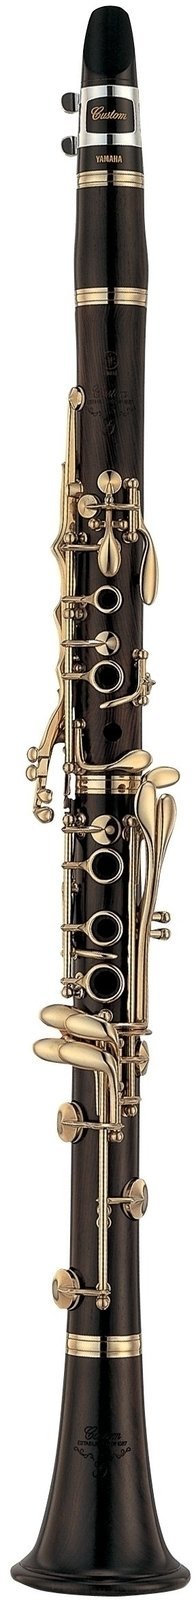 A Clarinet Yamaha YCL-CSGA III H 02 A Clarinet